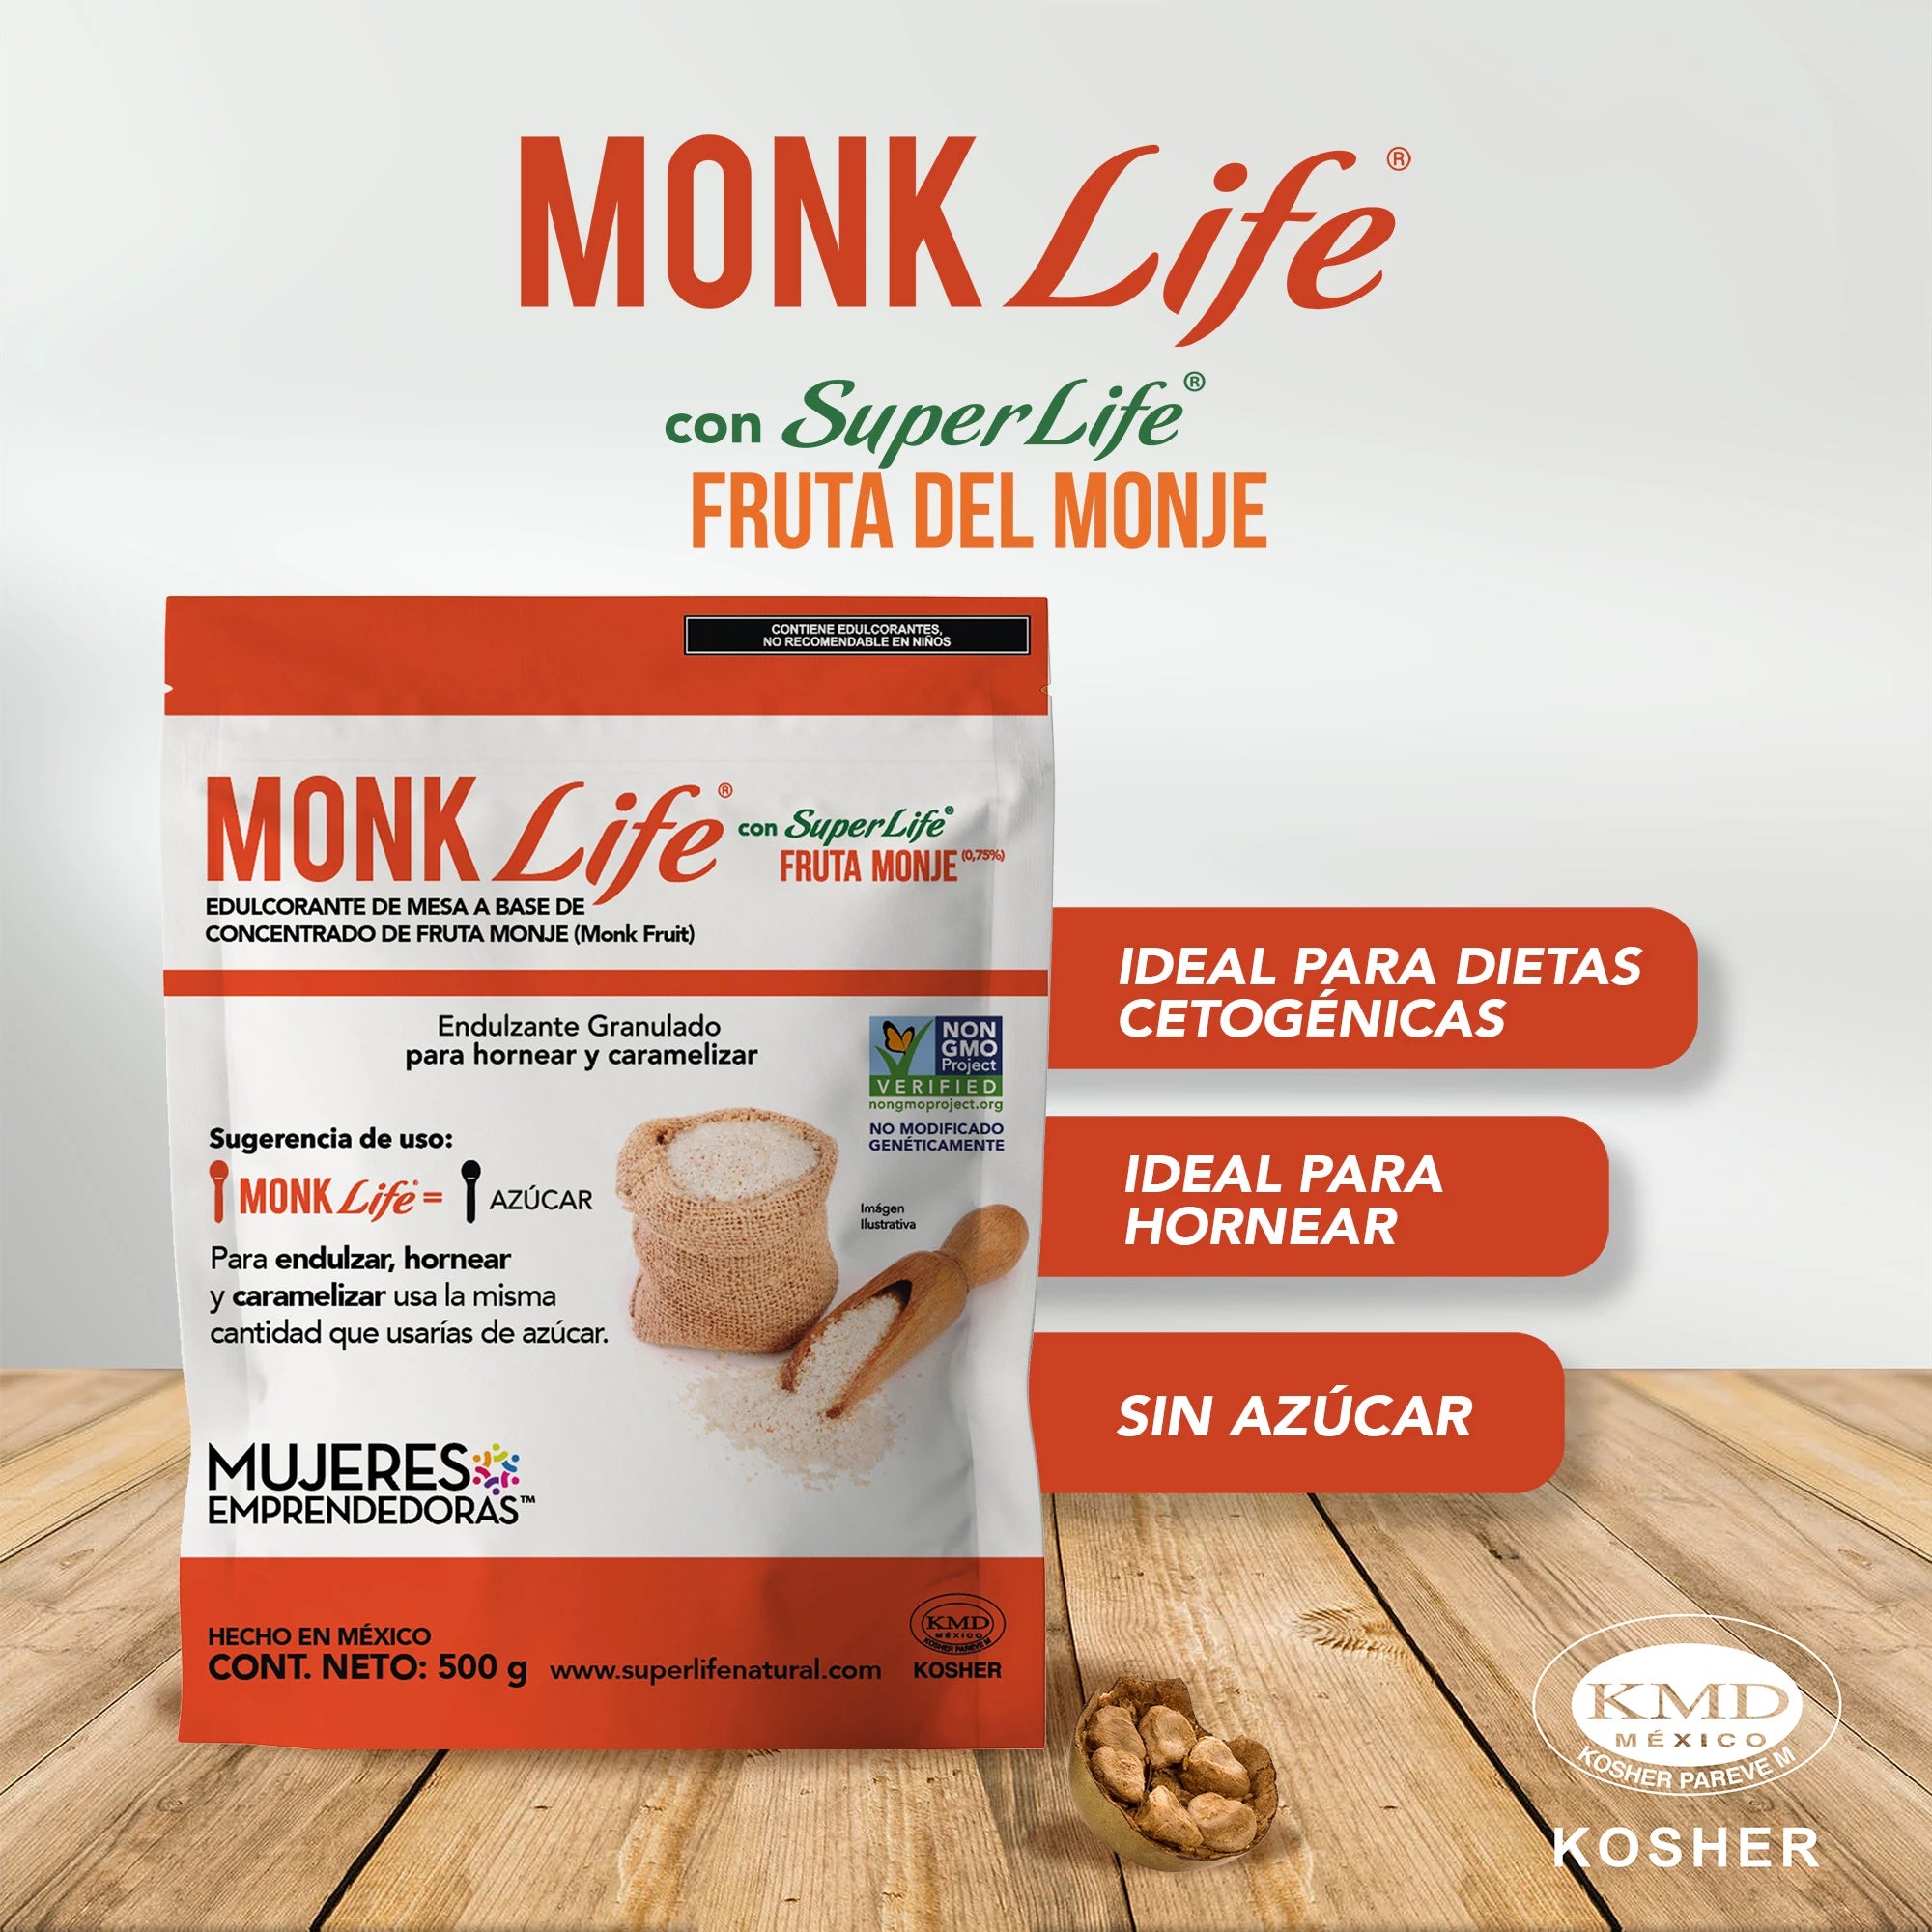 Super Life® Monk Life